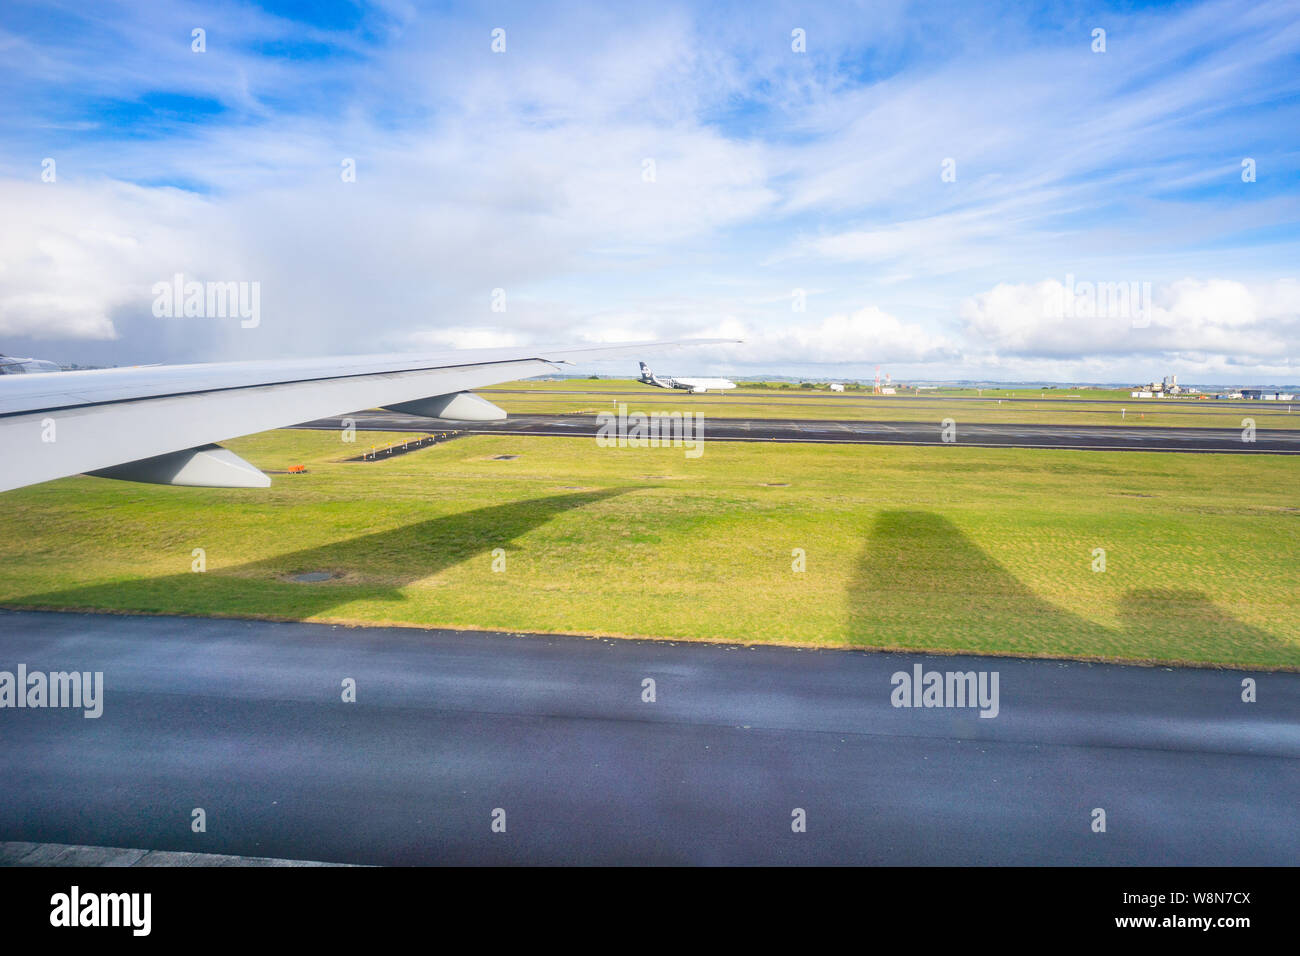 AUCKLAND, Neuseeland - 9. JULI 2019; Air New Zealand Flugzeug taxiis auf weit Landebahn yhrough Flugzeug Fenster auf dem Auckland Flughafen Landebahn Stockfoto